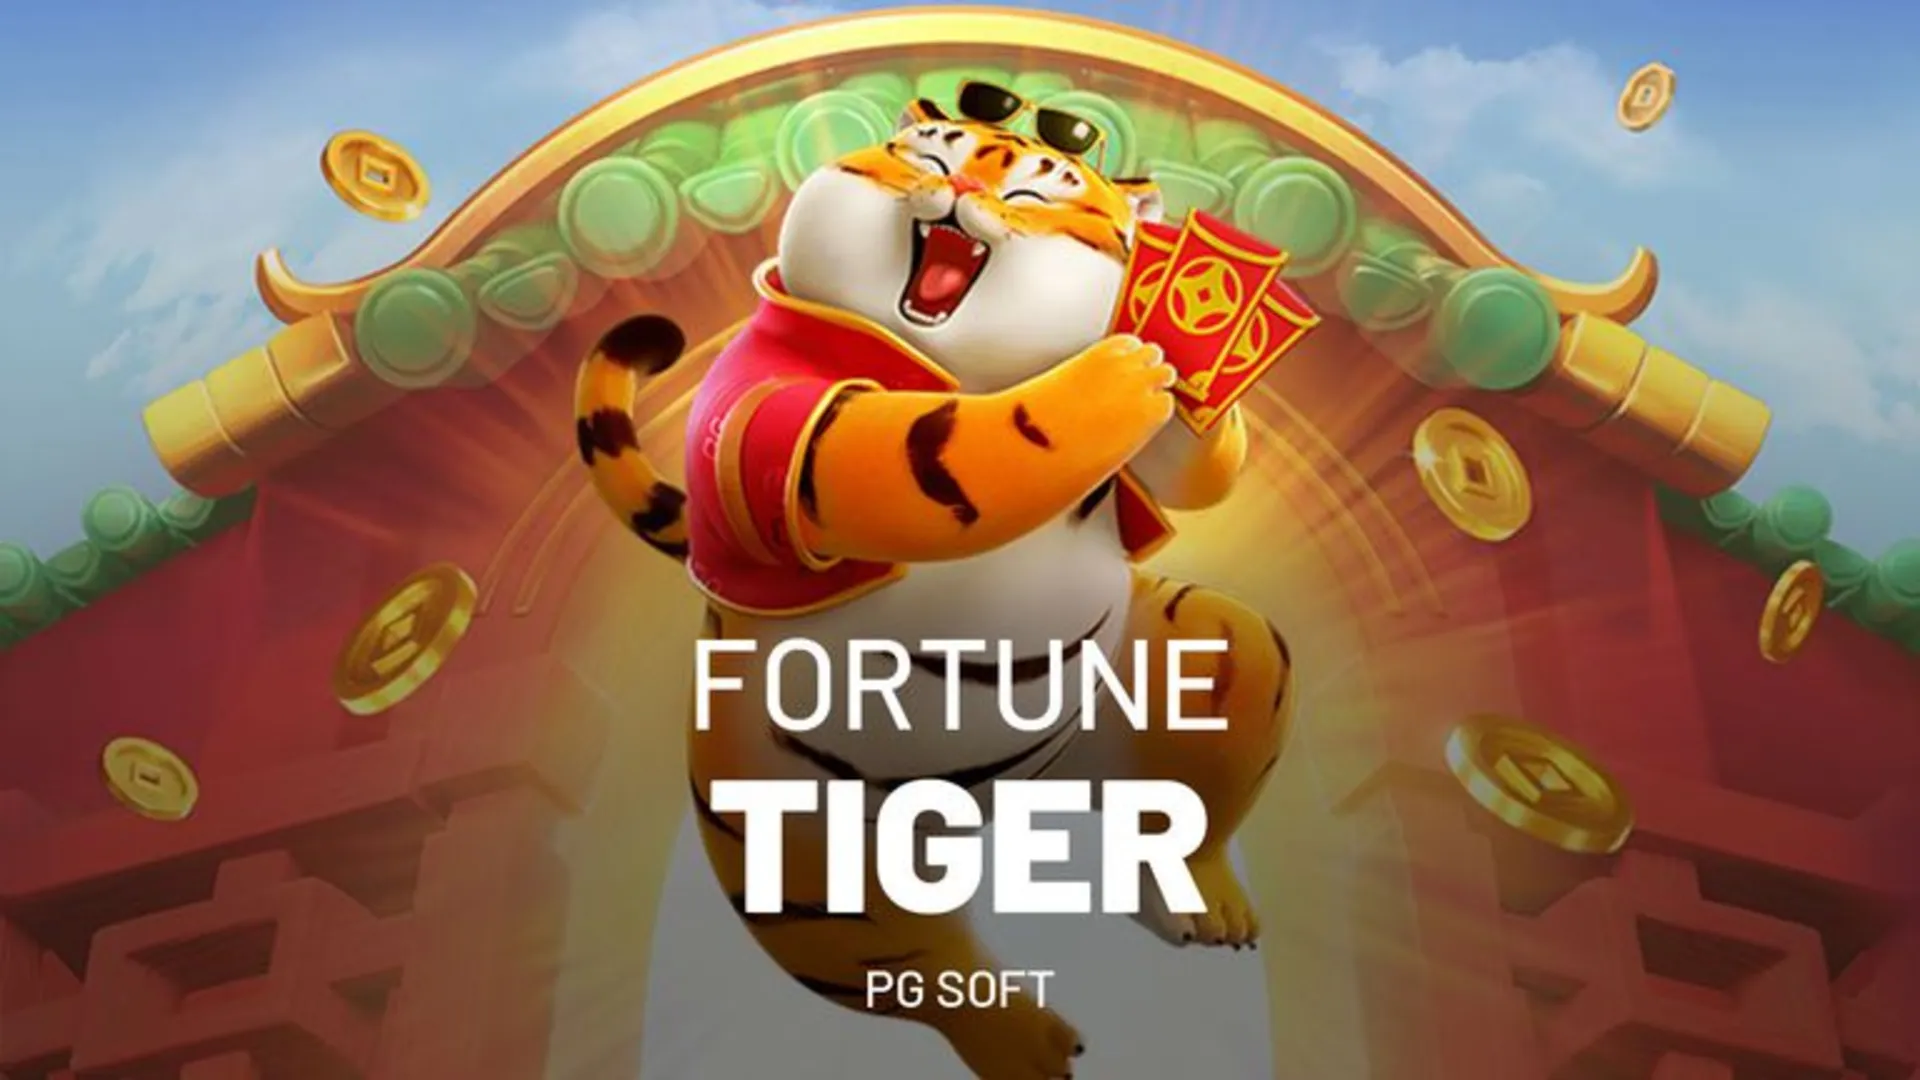 Fortune Tiger: Saiba tudo sobre o Jogo do Tigre - Portal Correio